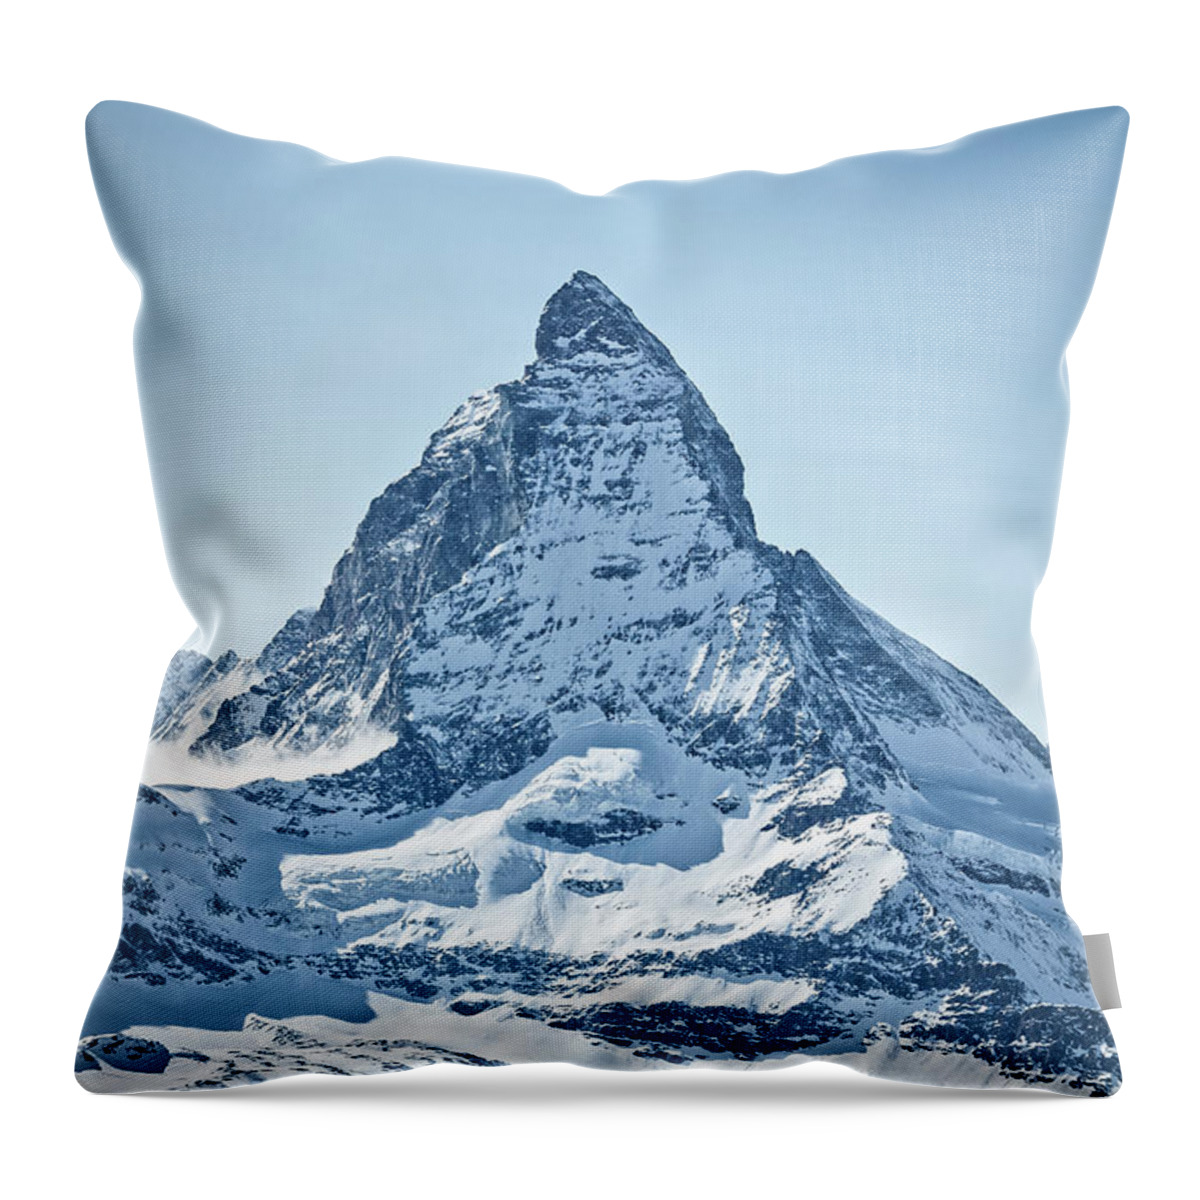 Alpine Throw Pillow featuring the photograph The Matterhorn by Rick Deacon